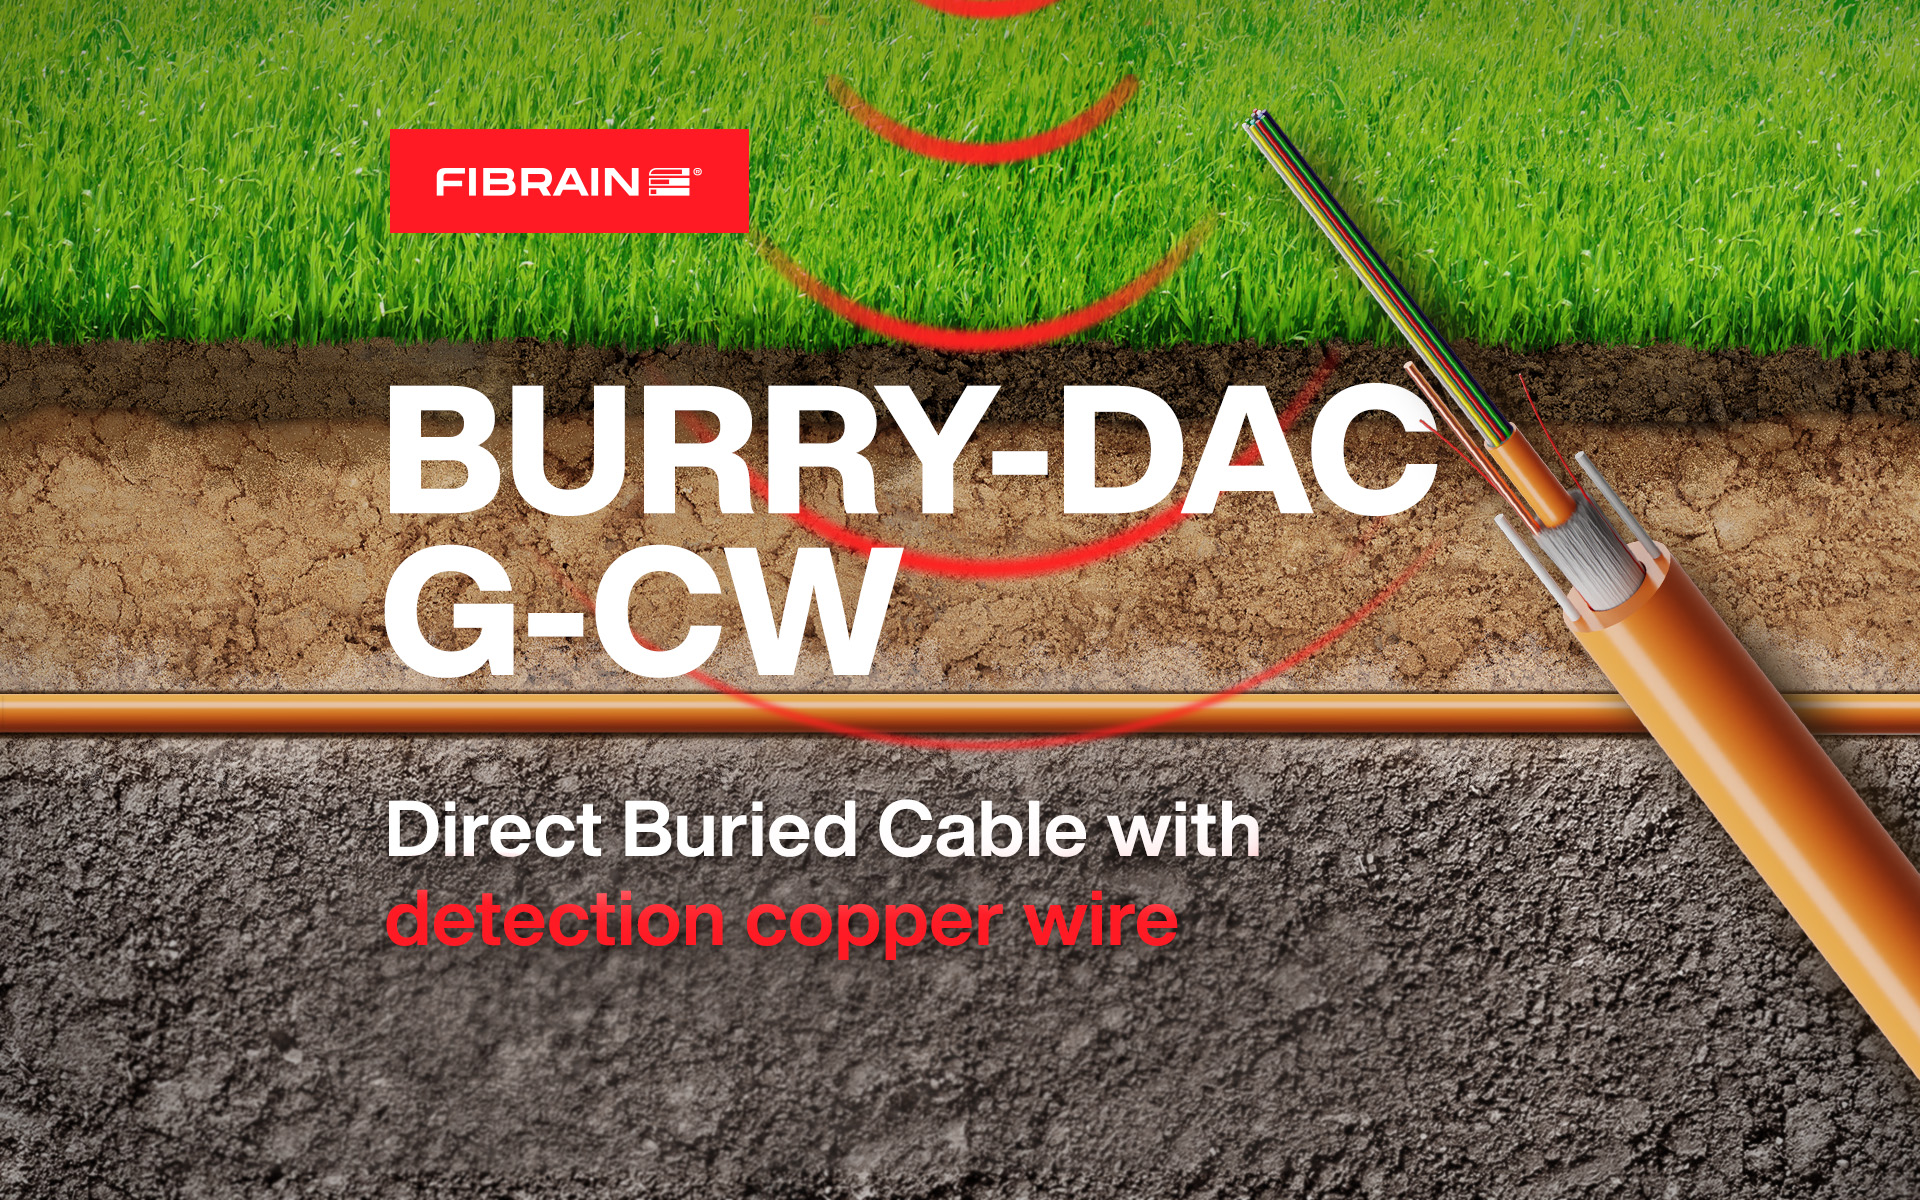 New cable design BURRY-DAC-G-CW for live fiber and dark fiber detection!